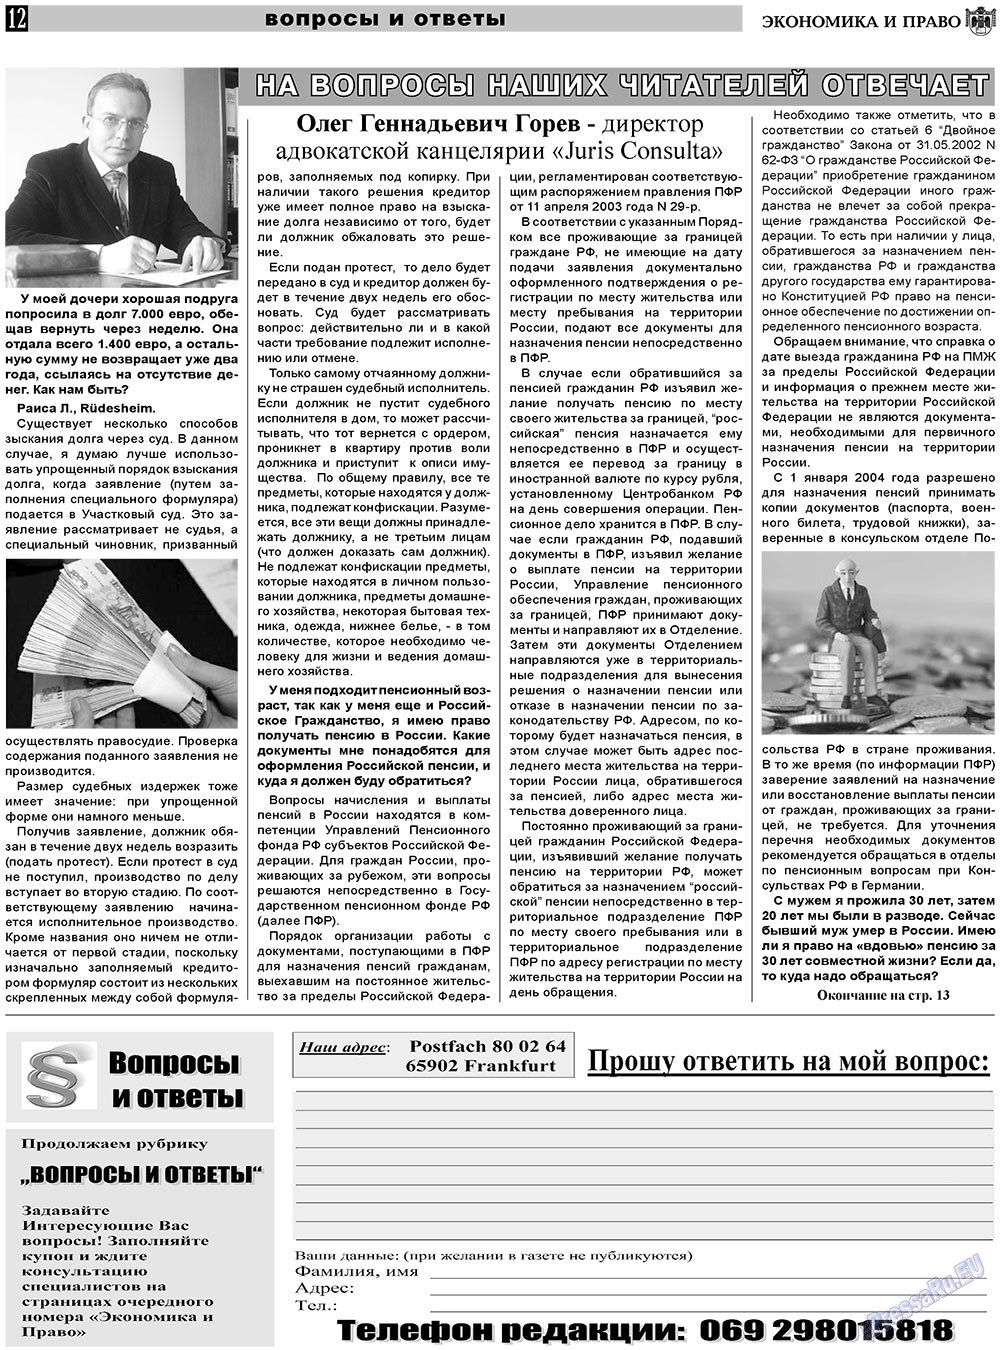 Экономика и право, газета. 2010 №11 стр.12